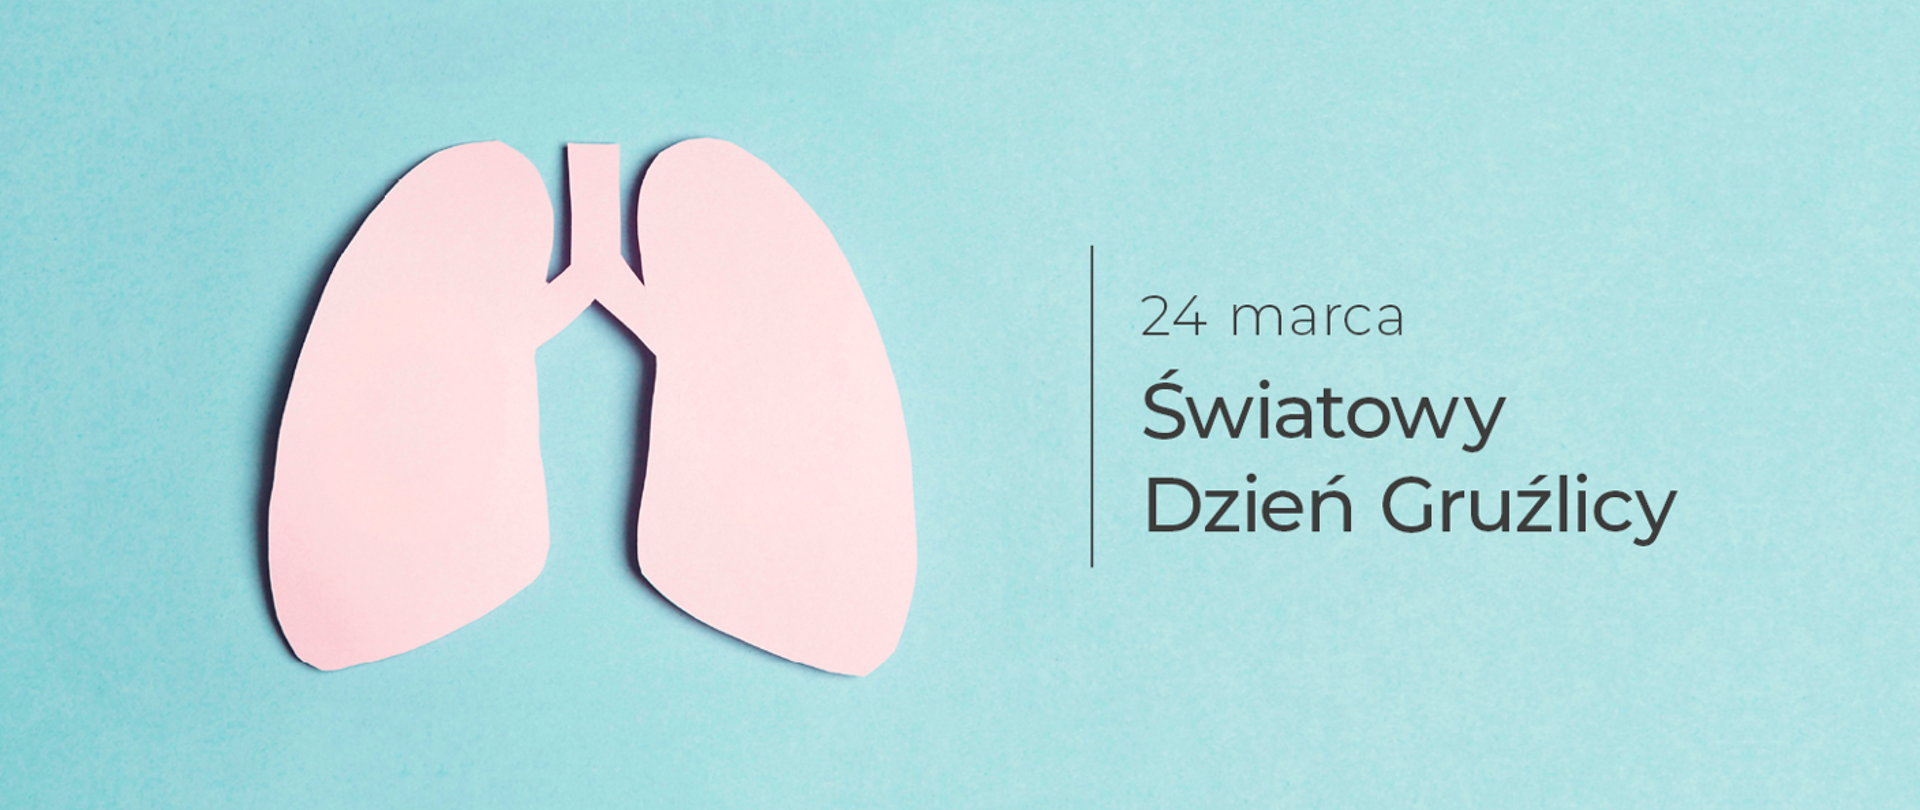 różowe płuca na błękitnym tle z opisem24 marca światowy dzień gruźlicy 